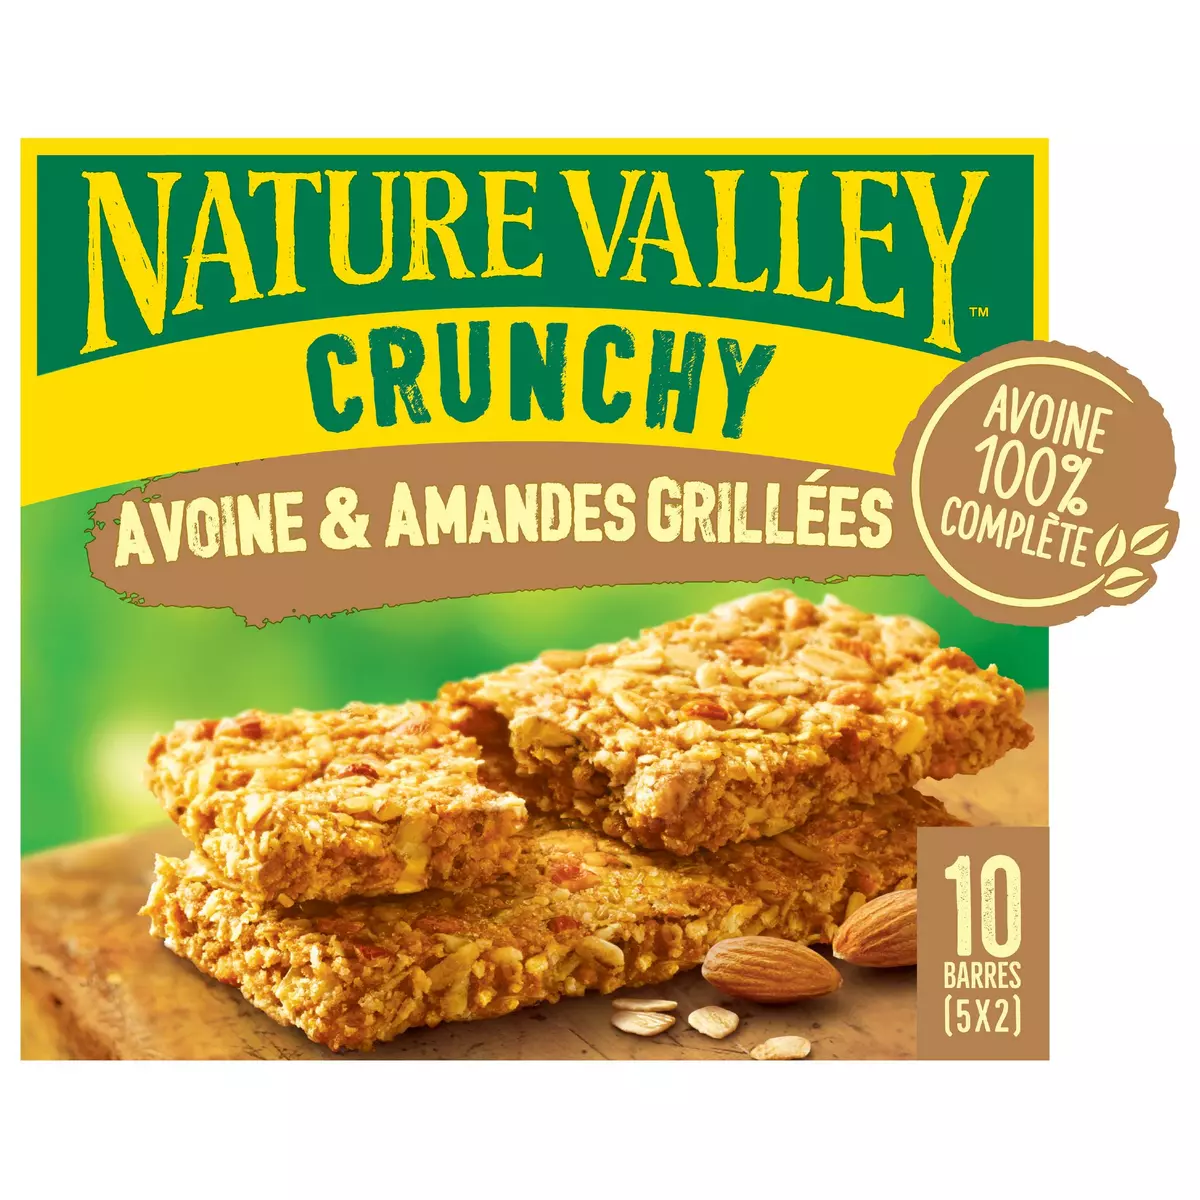 NATURE VALLEY Crunchy barres de céréales avoine et amandes grillées 10 barres 210g